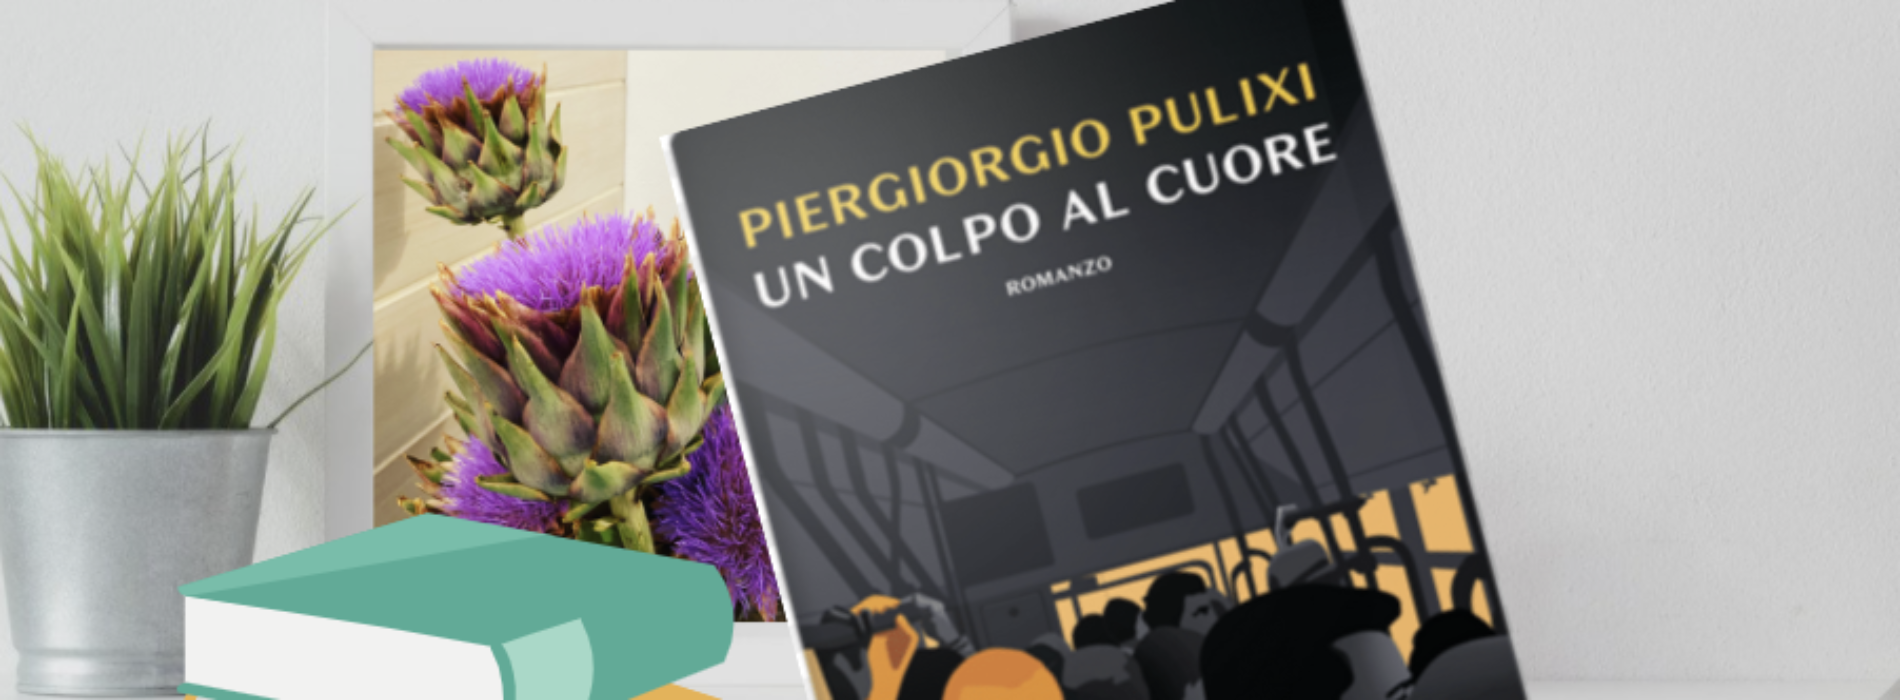 Spartaco live, Piergiorgio Pulixi presenta “Un colpo al cuore”